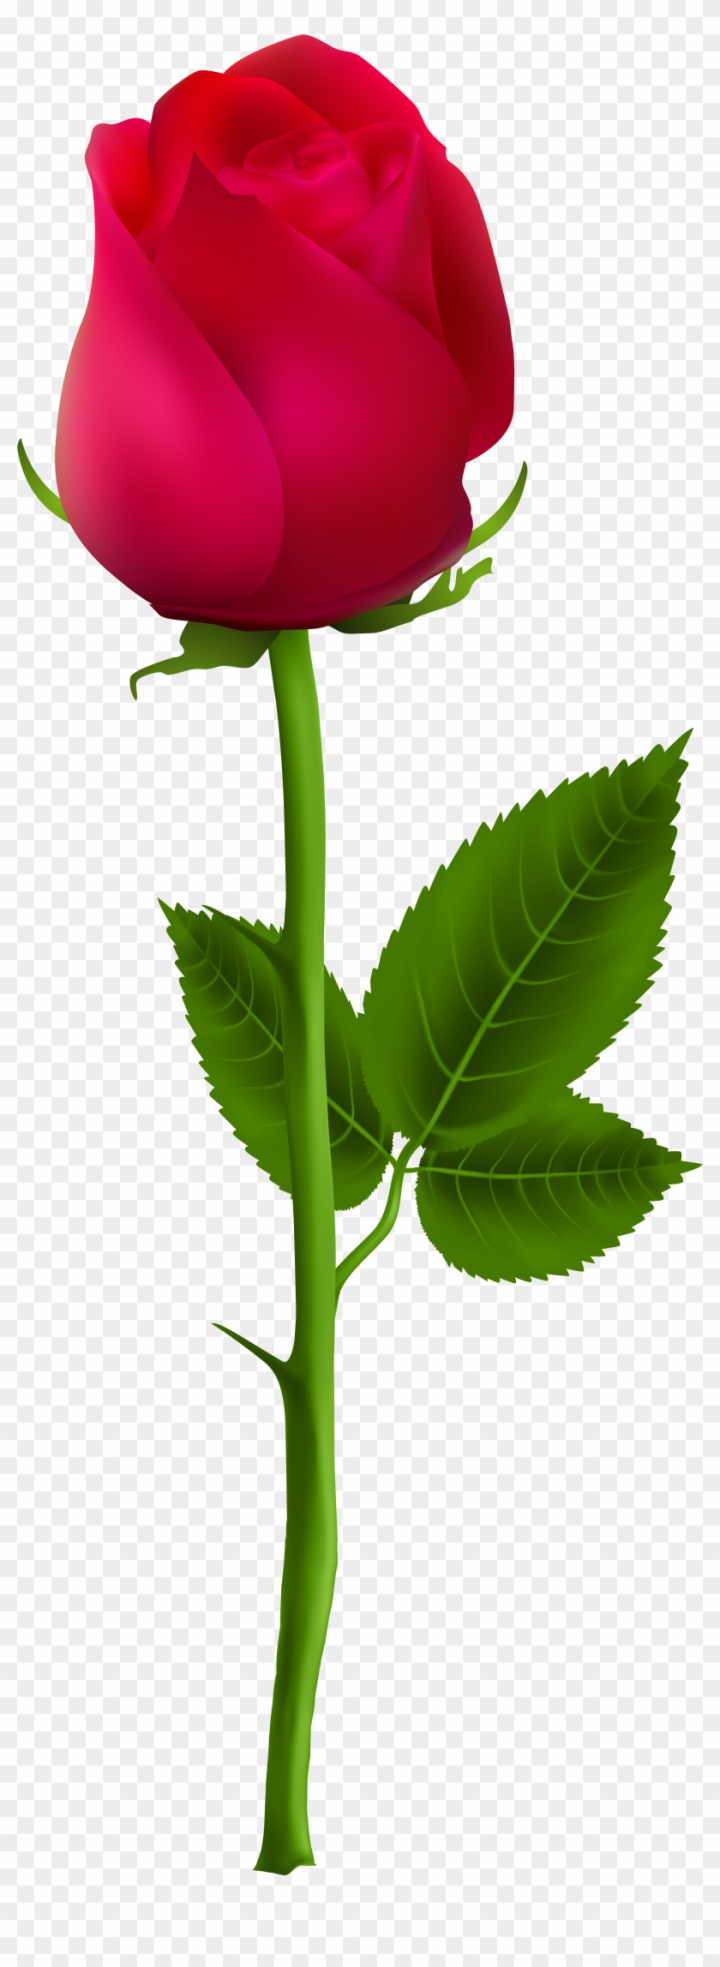 Rose bud botanical illustration. Flower branch sketch Stock Vector Image &  Art - Alamy